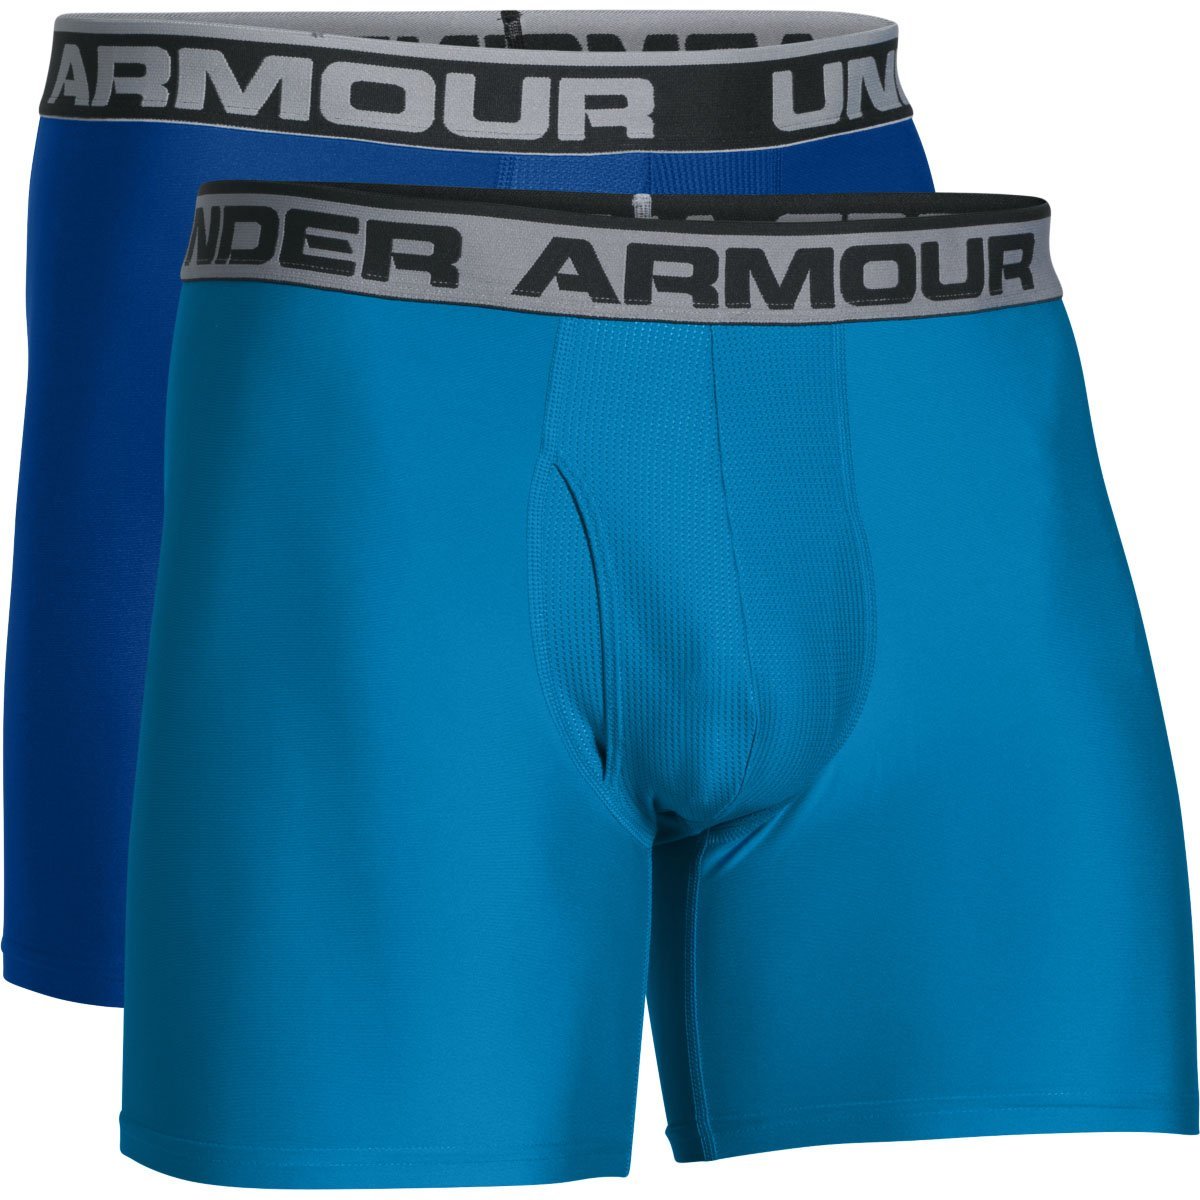 Short Underwear Under Armour  - Caballero